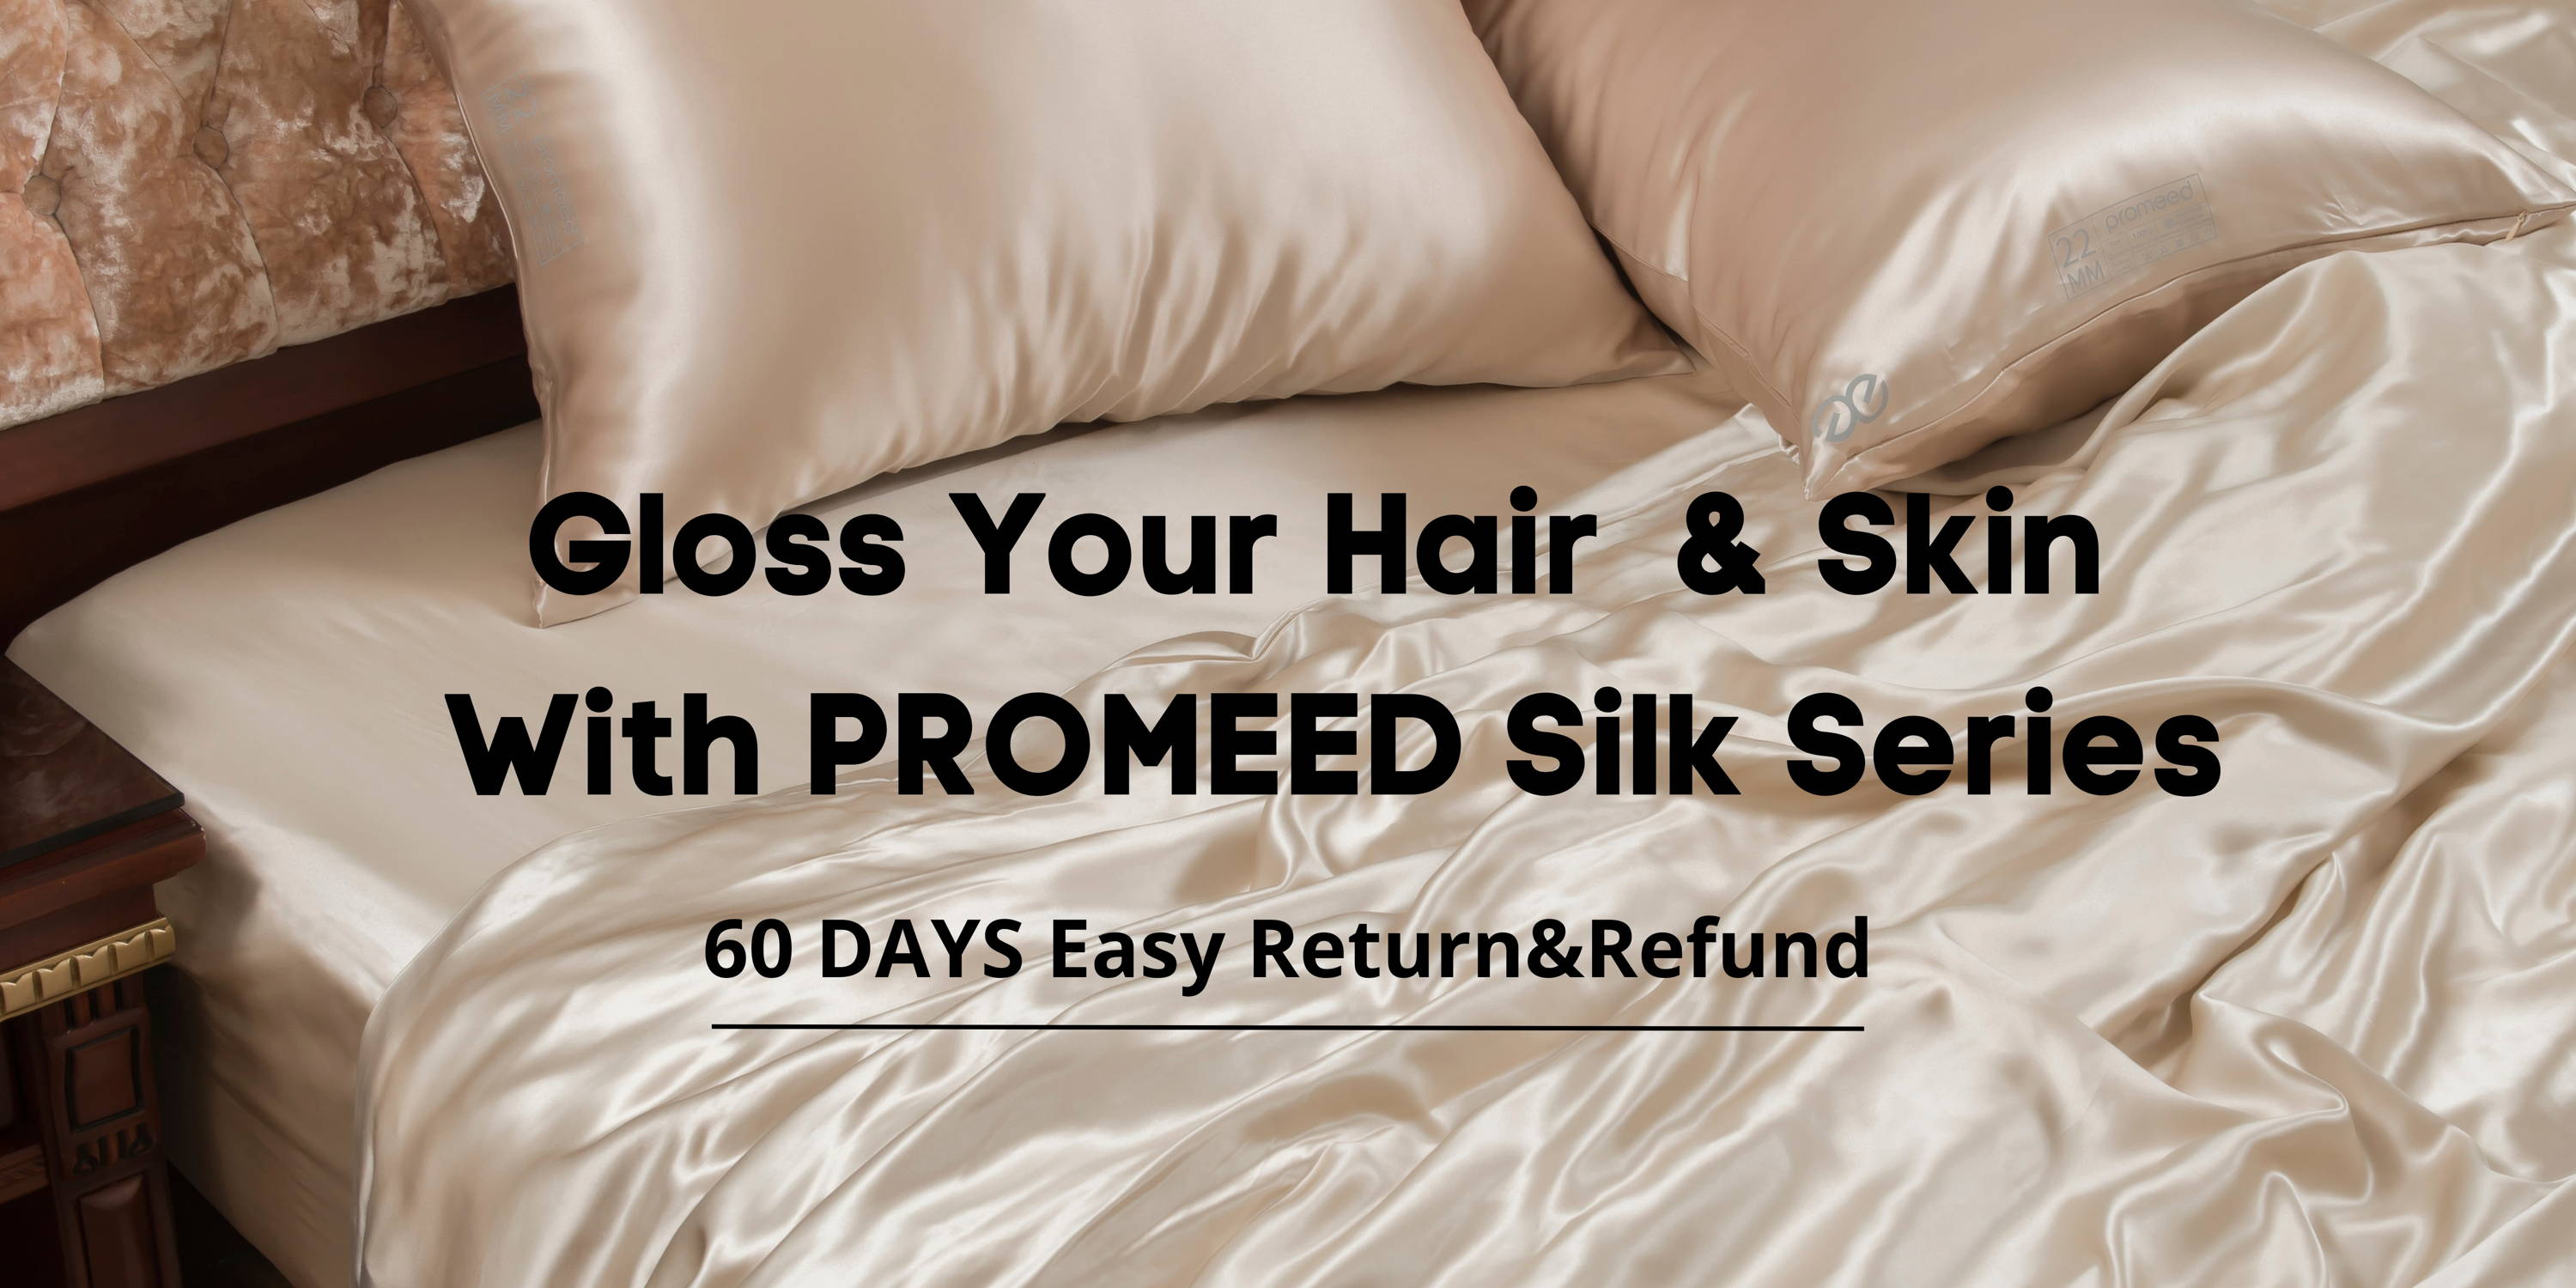 Promeed Silk Series